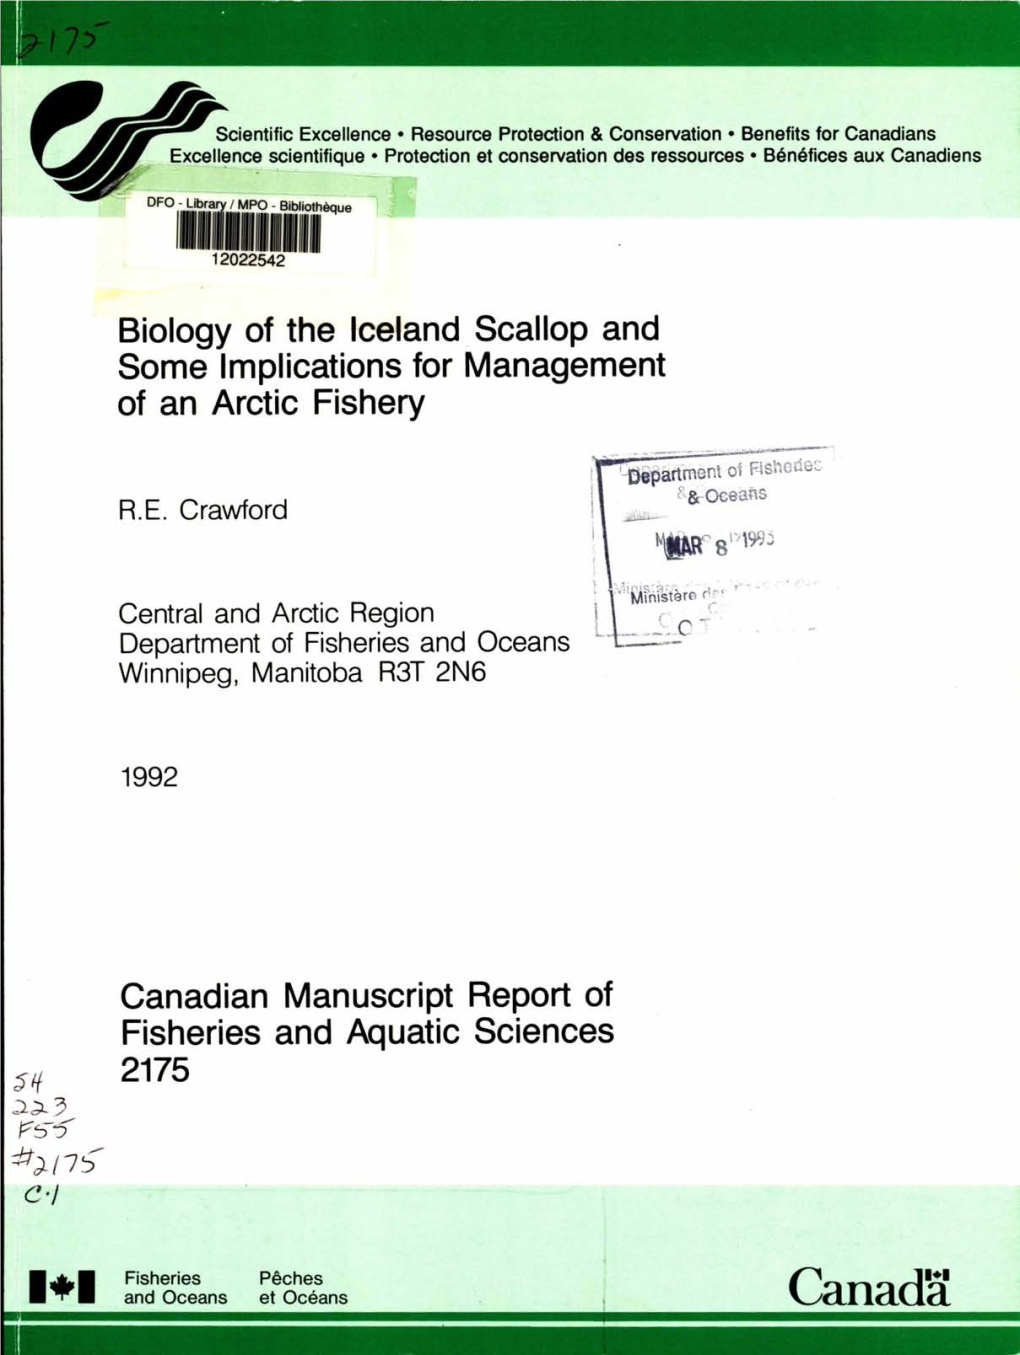 Canadian Manuscript Report of Fisheries and Aquatic Sciences 2175 E-1